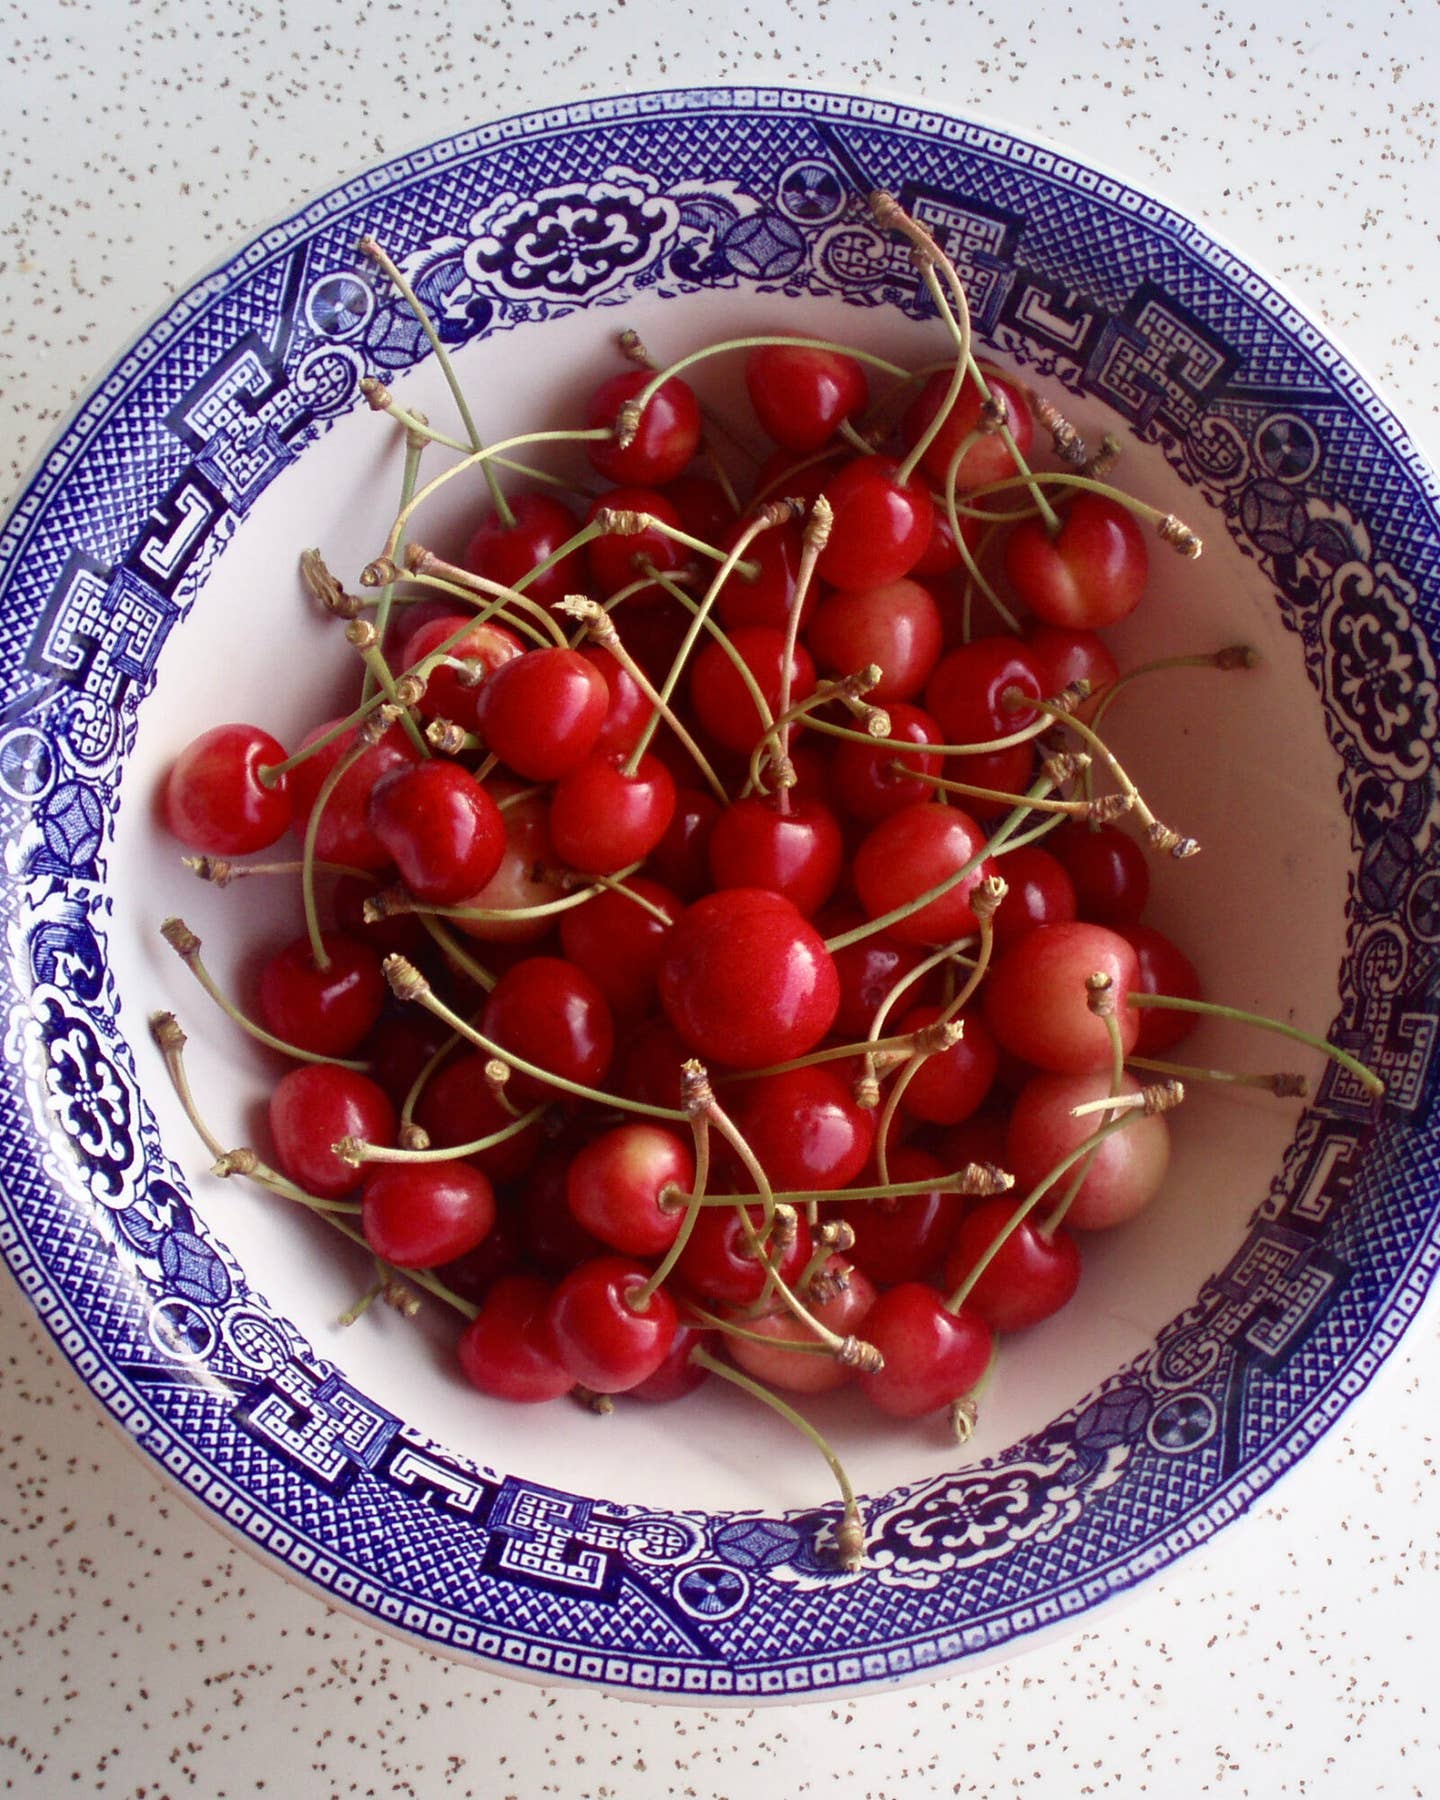 Bowl of cherries for Maraschino cherries